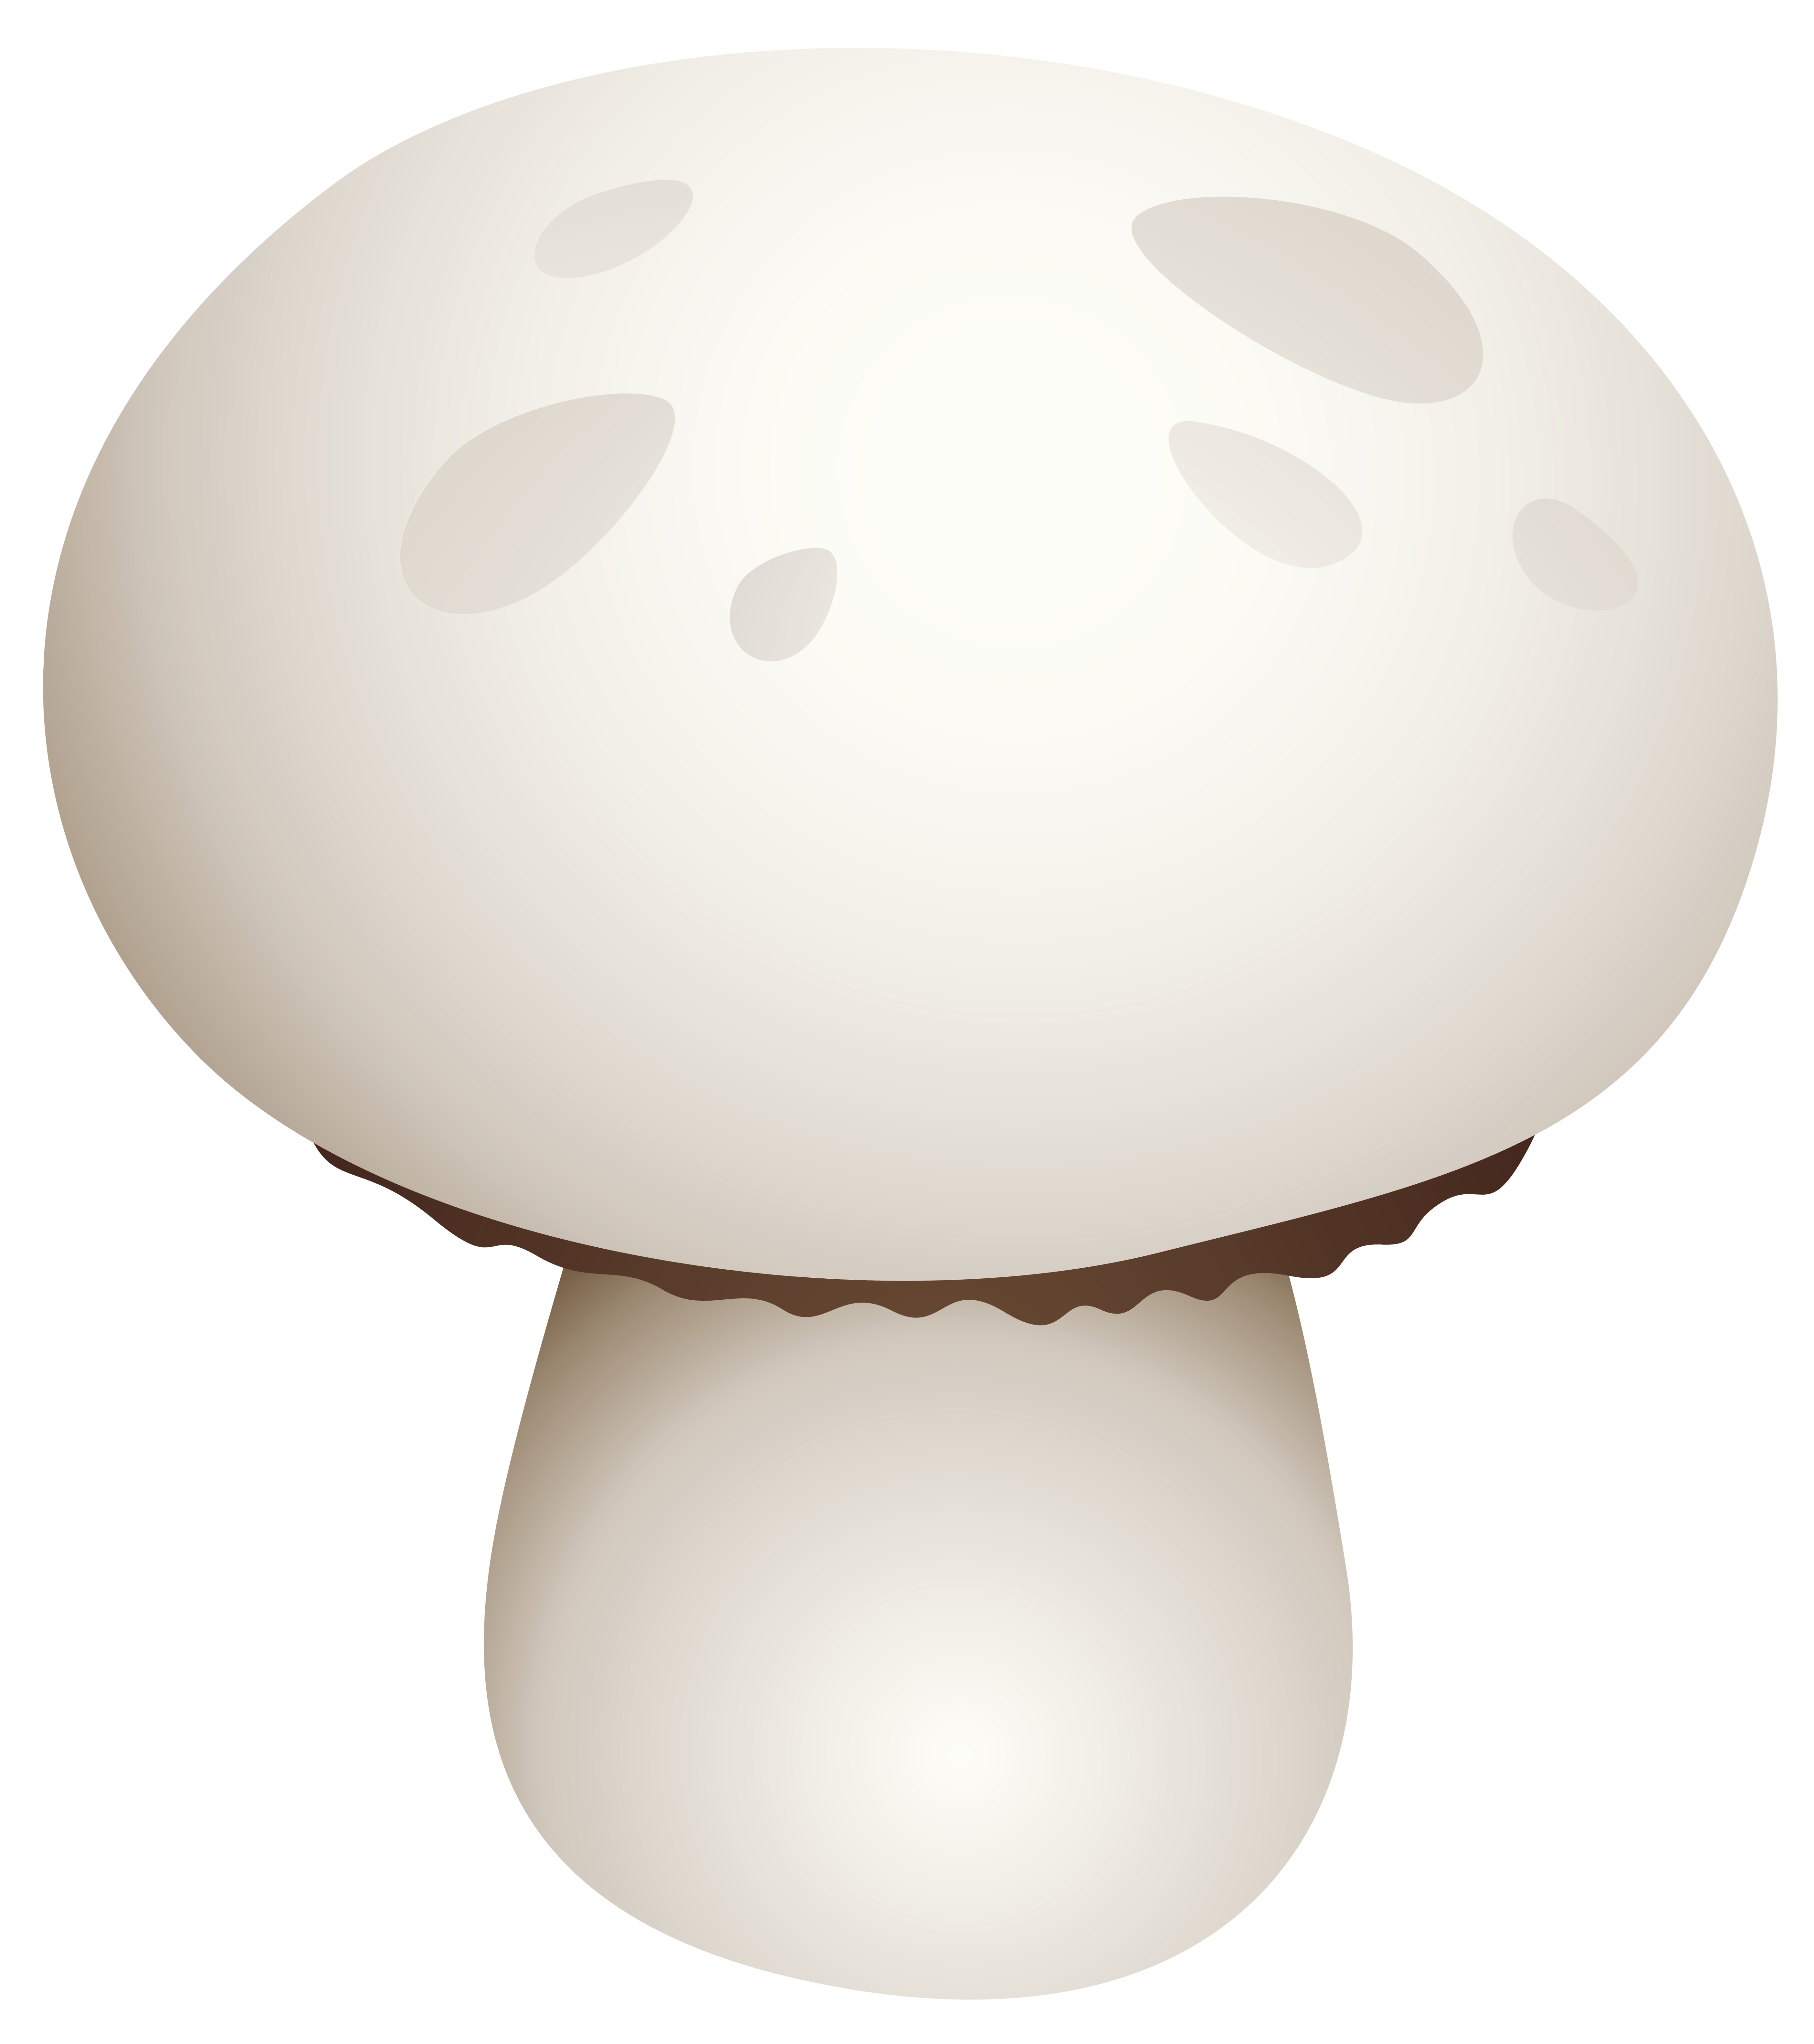 mushrooms clipart dark brown